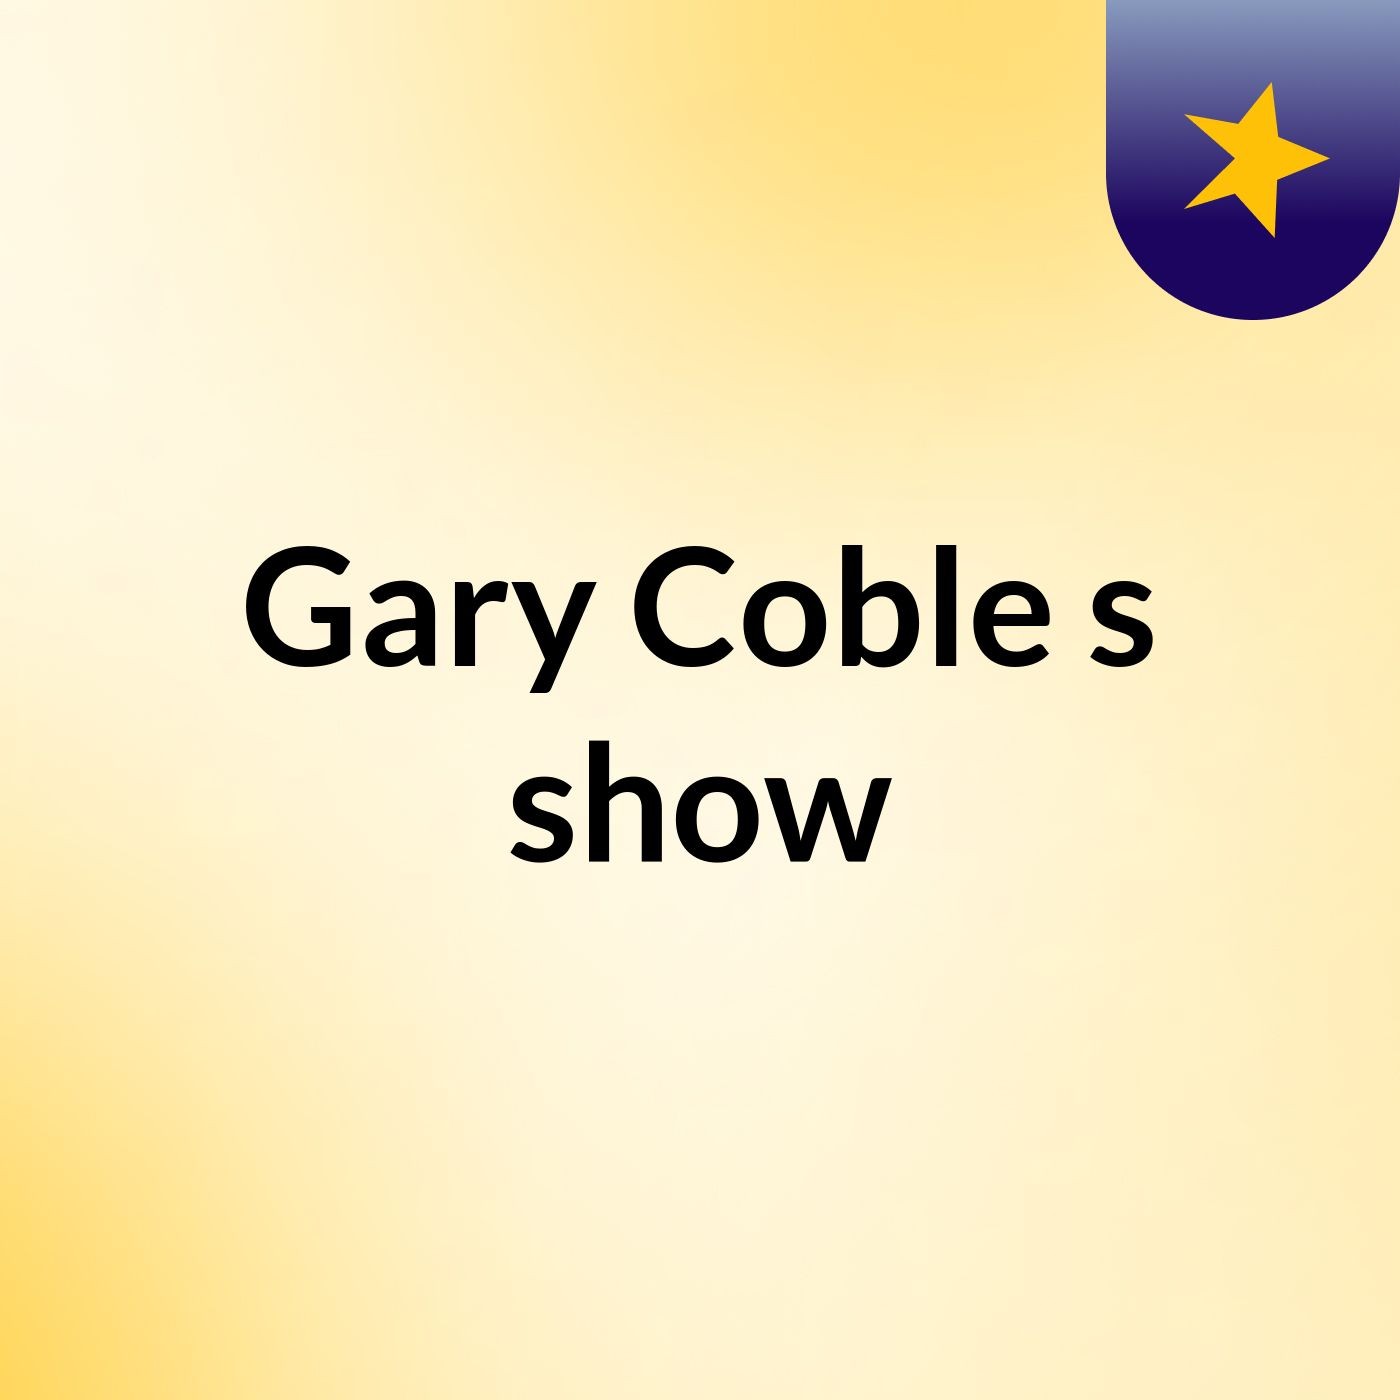 Gary Coble's show